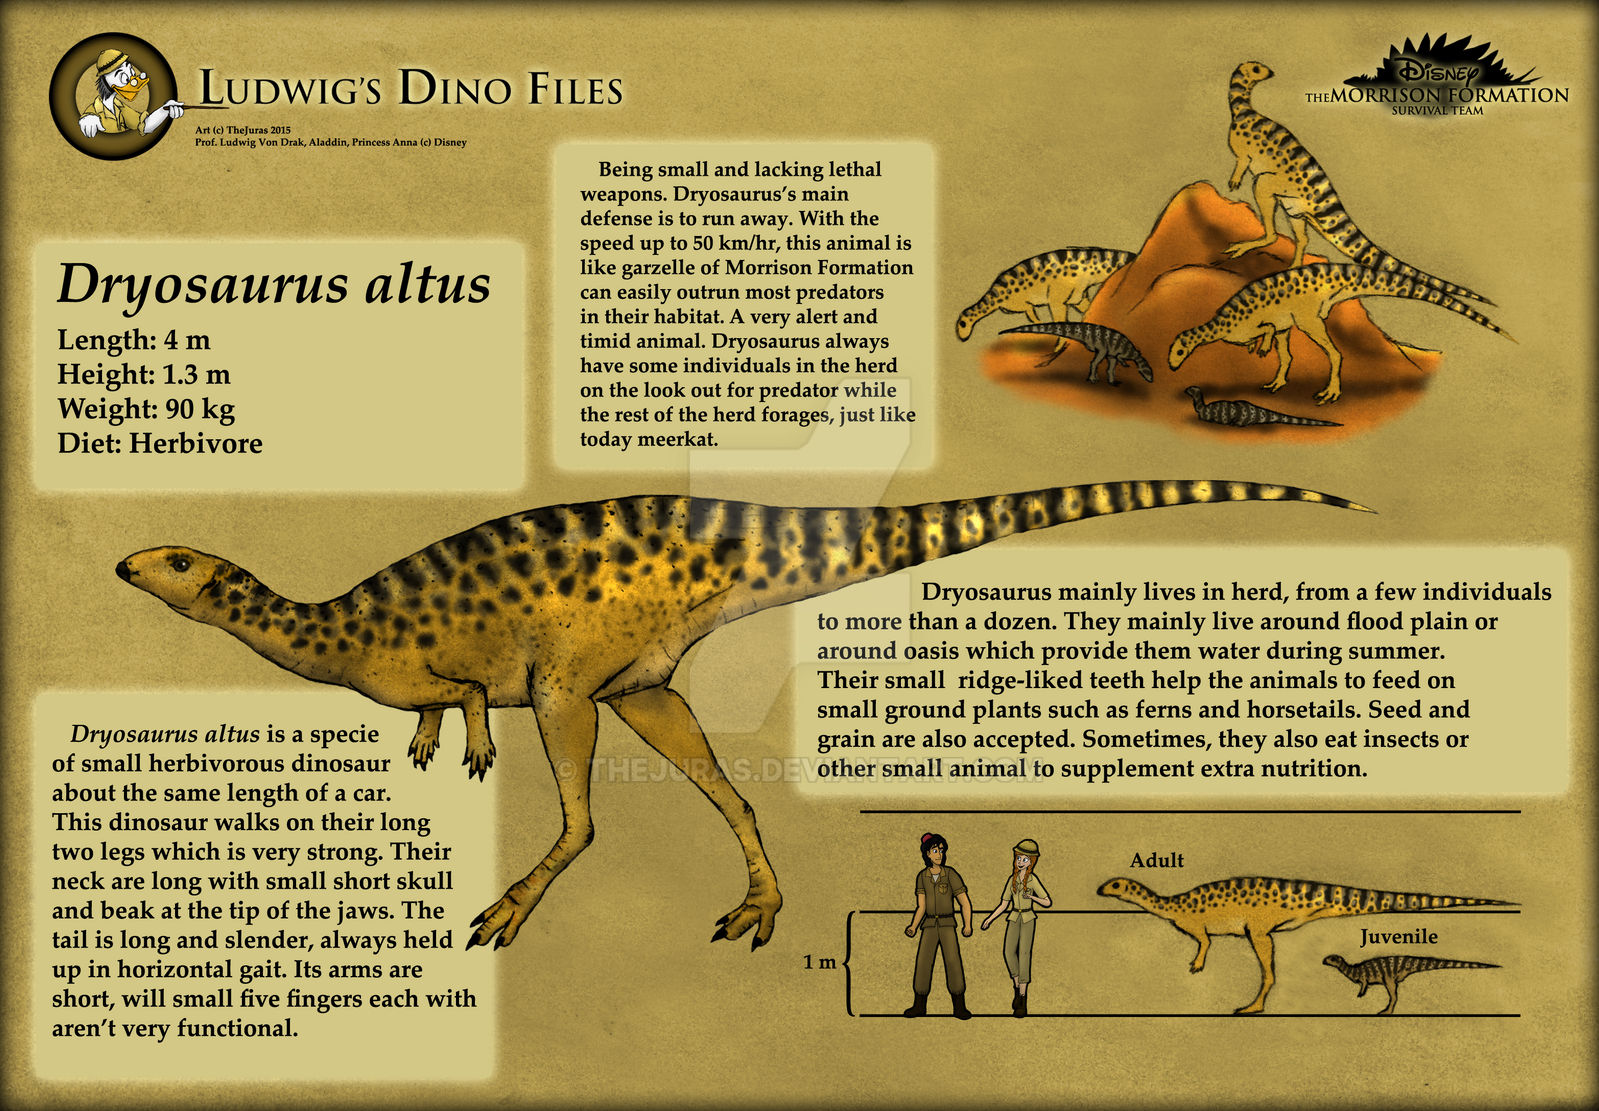 Ludwig's Dino Files: Dryosaurus altus by TheJuras on DeviantArt